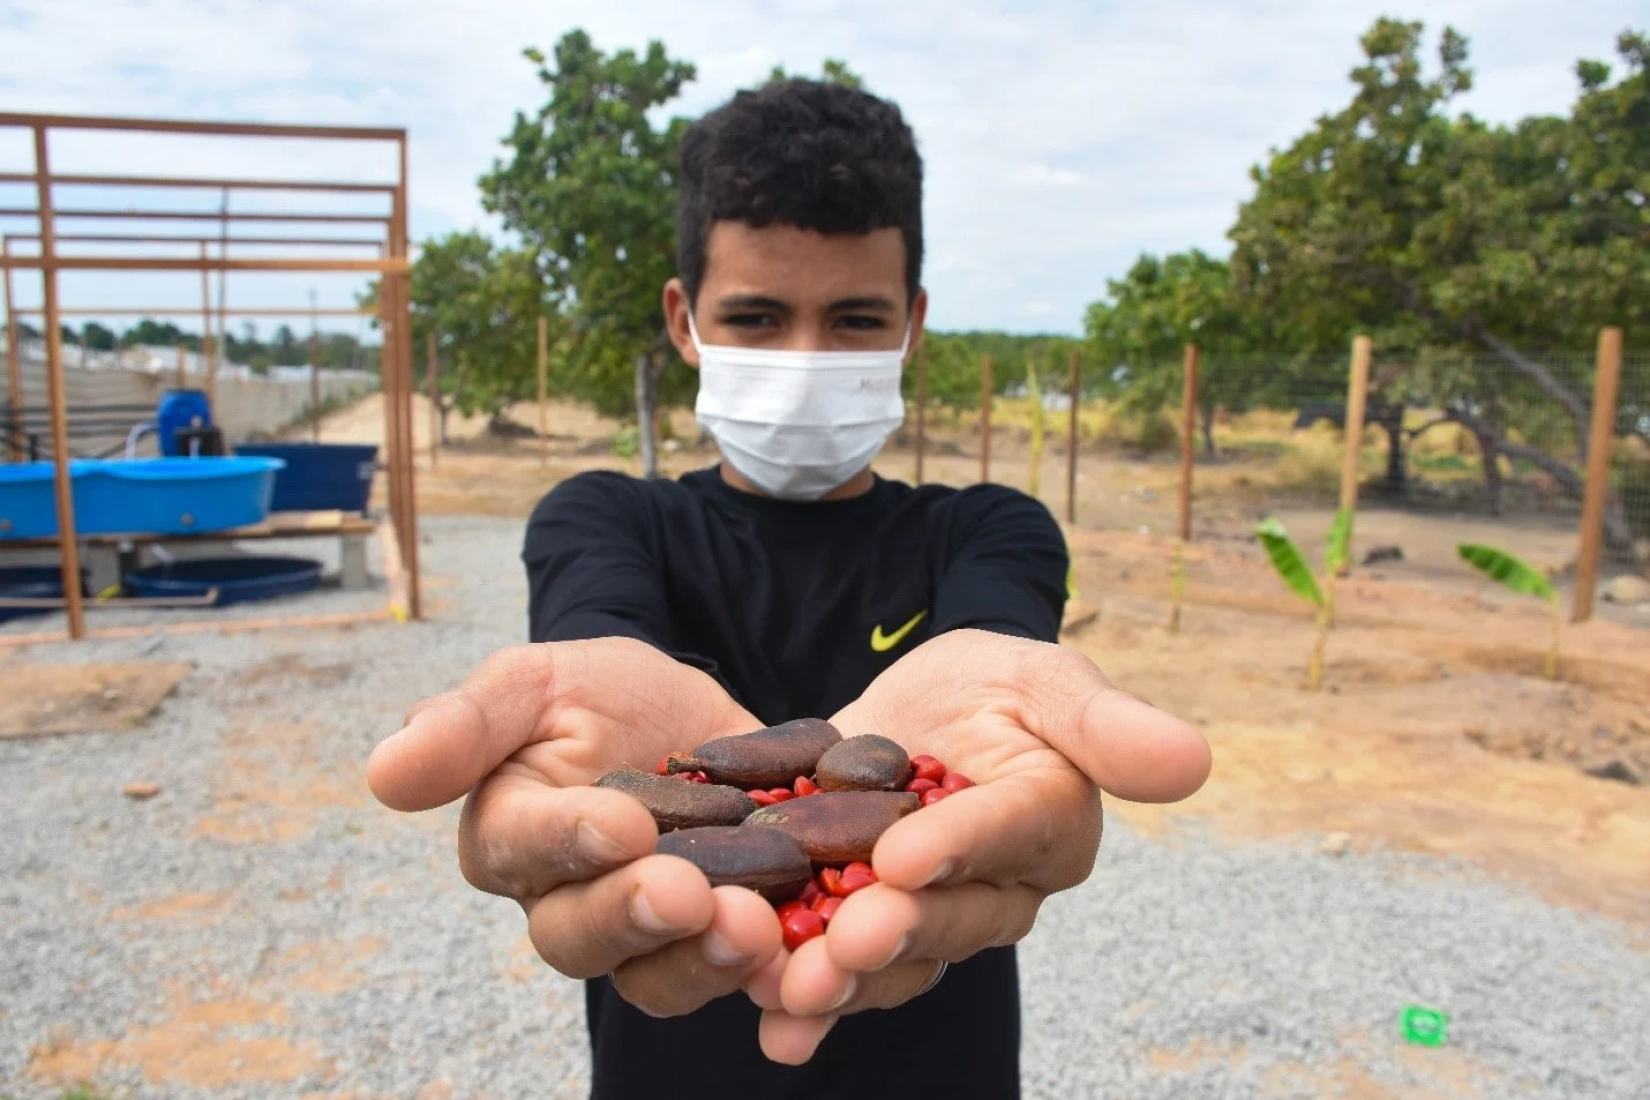 Jovens aprendem a cuidar de sementes que serão plantadas nos abrigos da Operação Acolhida. 